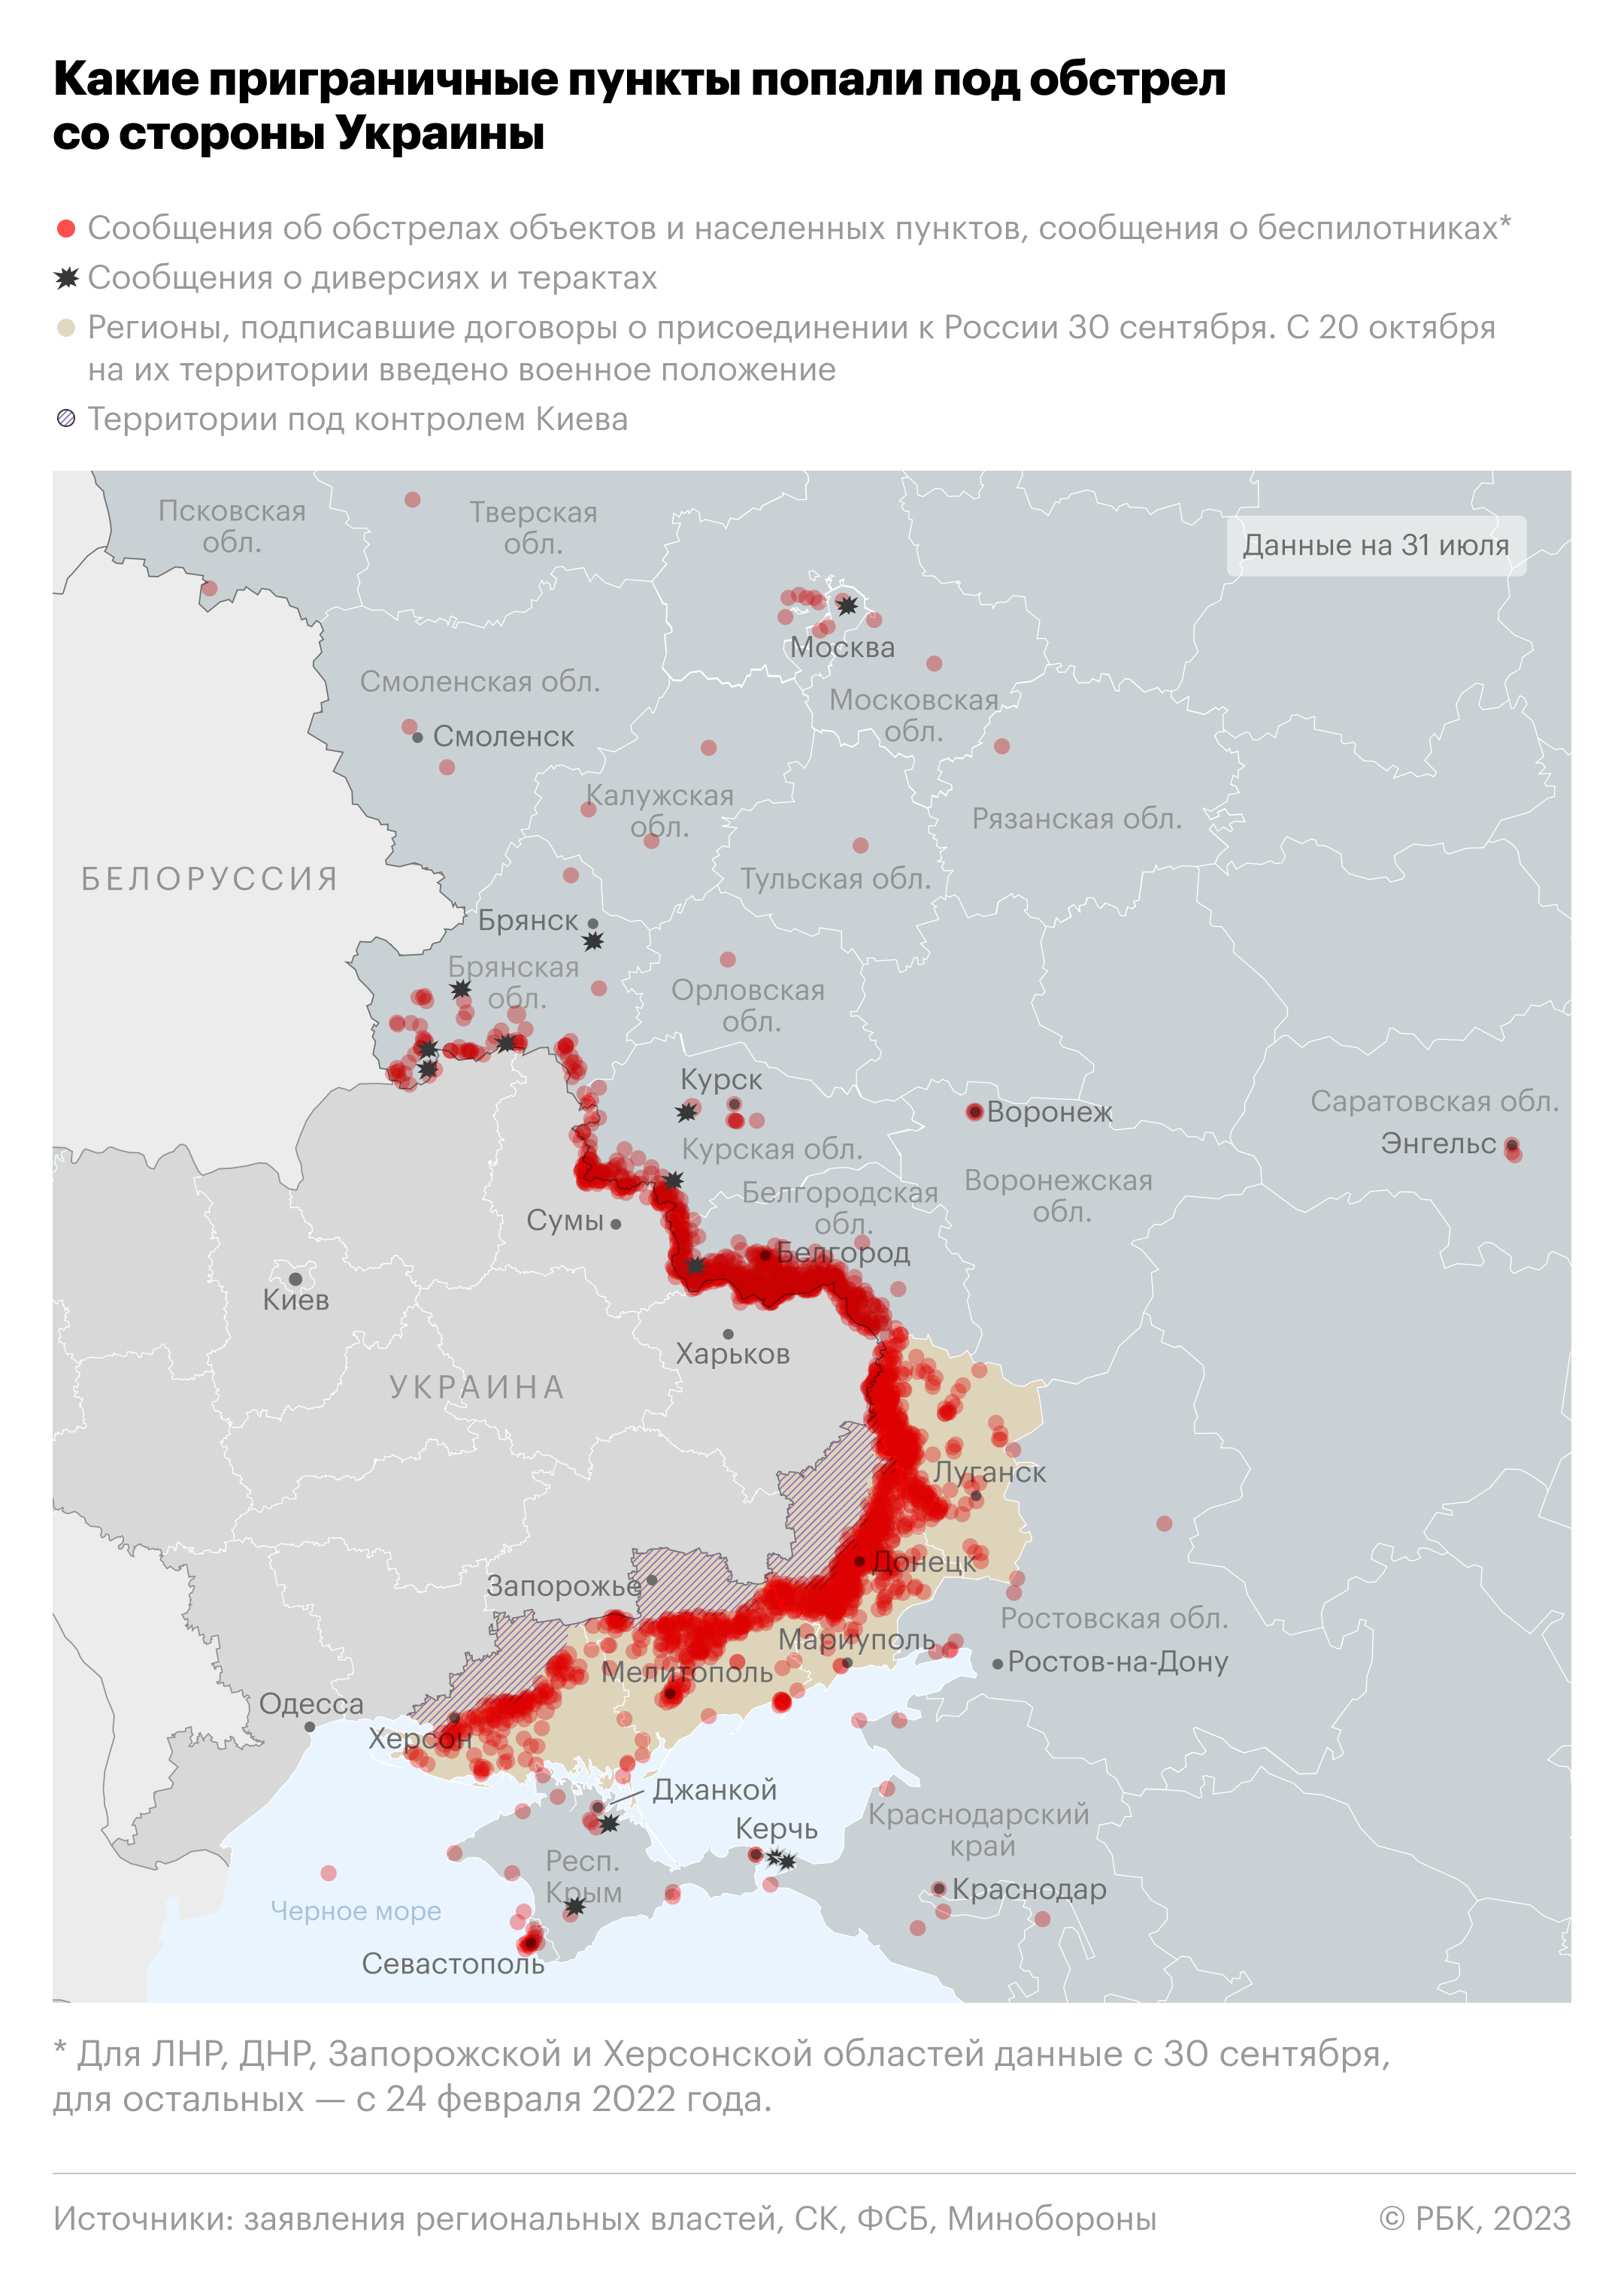 Атаки беспилотников и обстрелы территории России. Карта"/>













